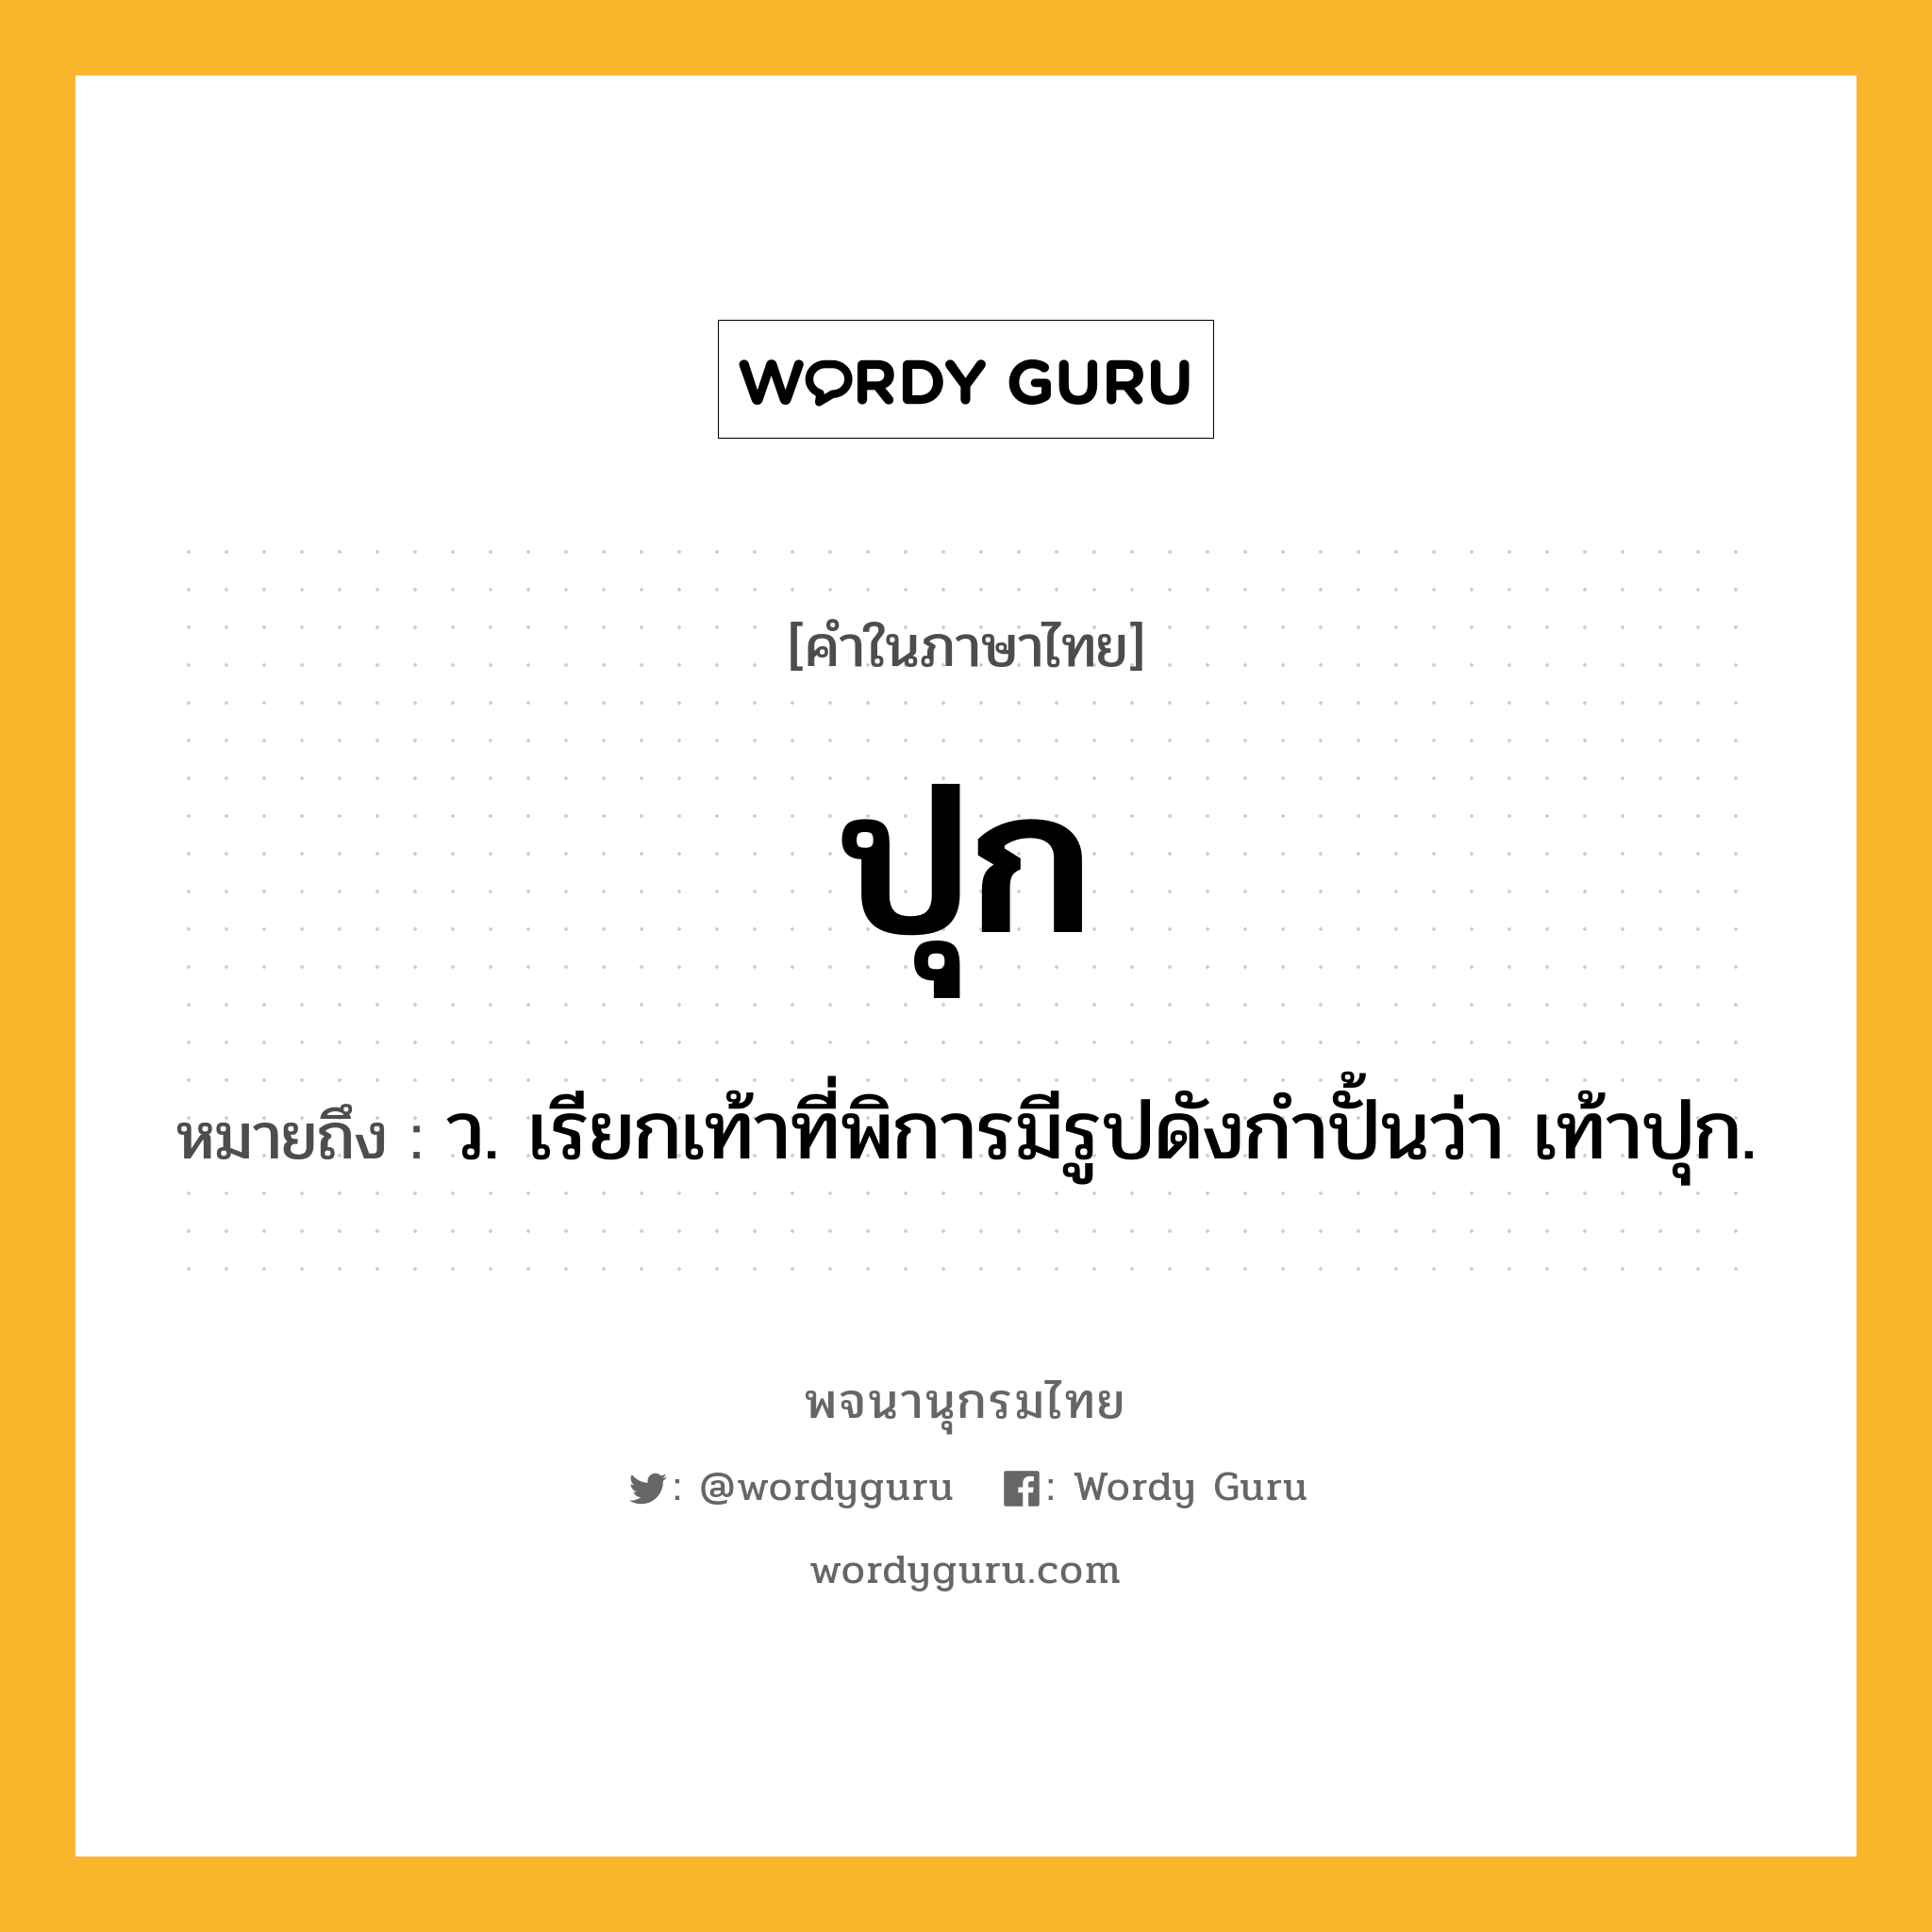 ปุก ความหมาย หมายถึงอะไร?, คำในภาษาไทย ปุก หมายถึง ว. เรียกเท้าที่พิการมีรูปดังกําปั้นว่า เท้าปุก.